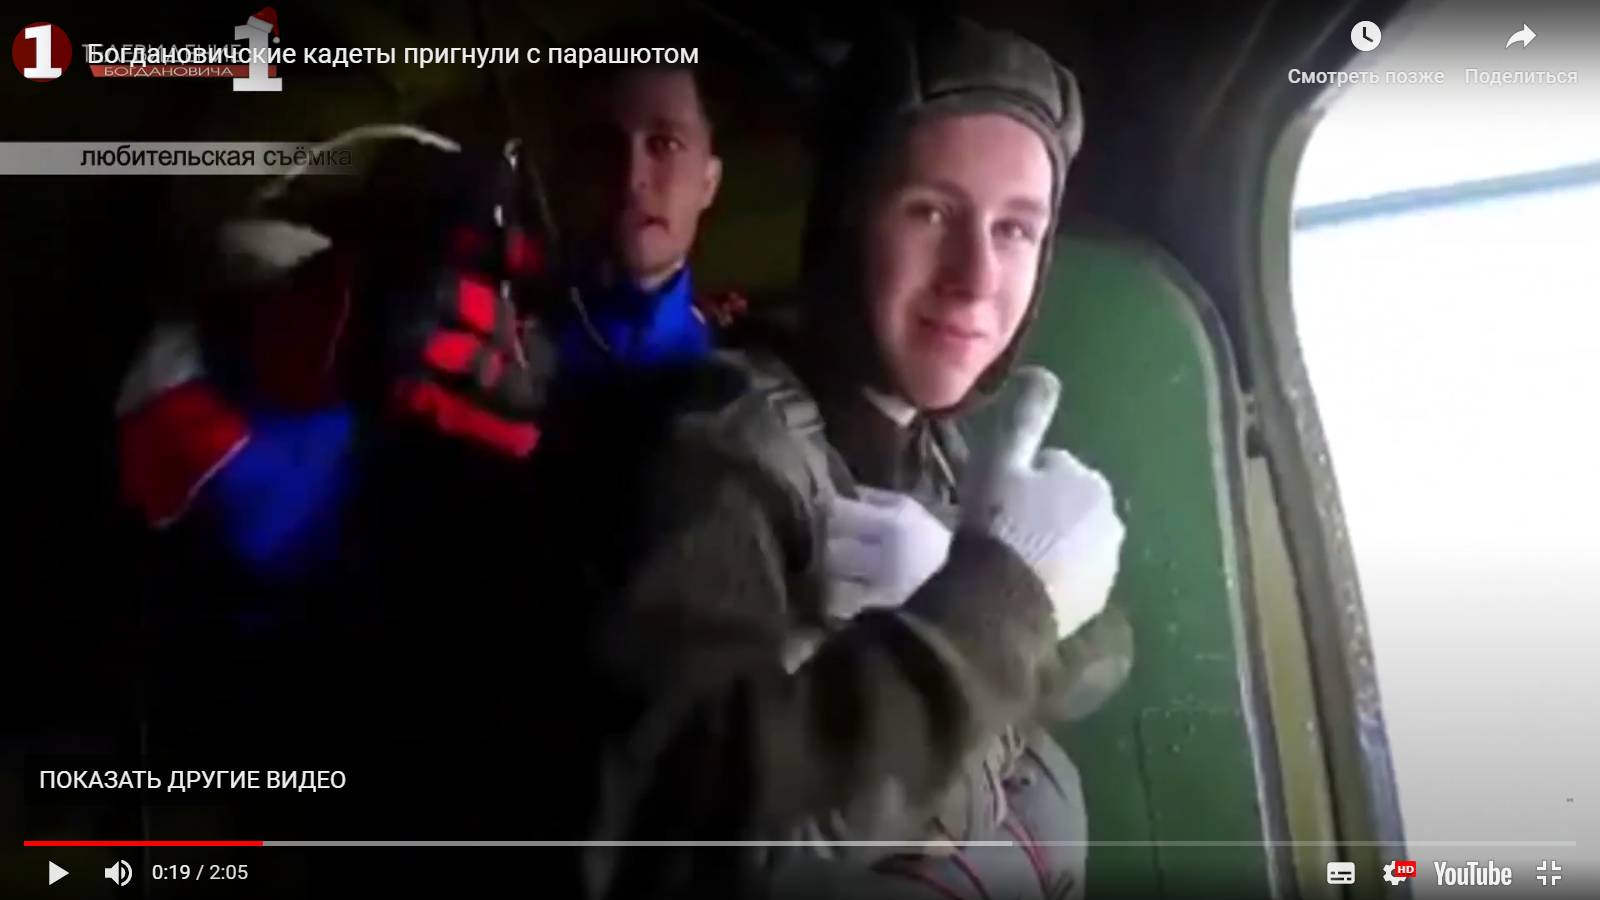 Видео: первые парашютные прыжки Богдановических кадет